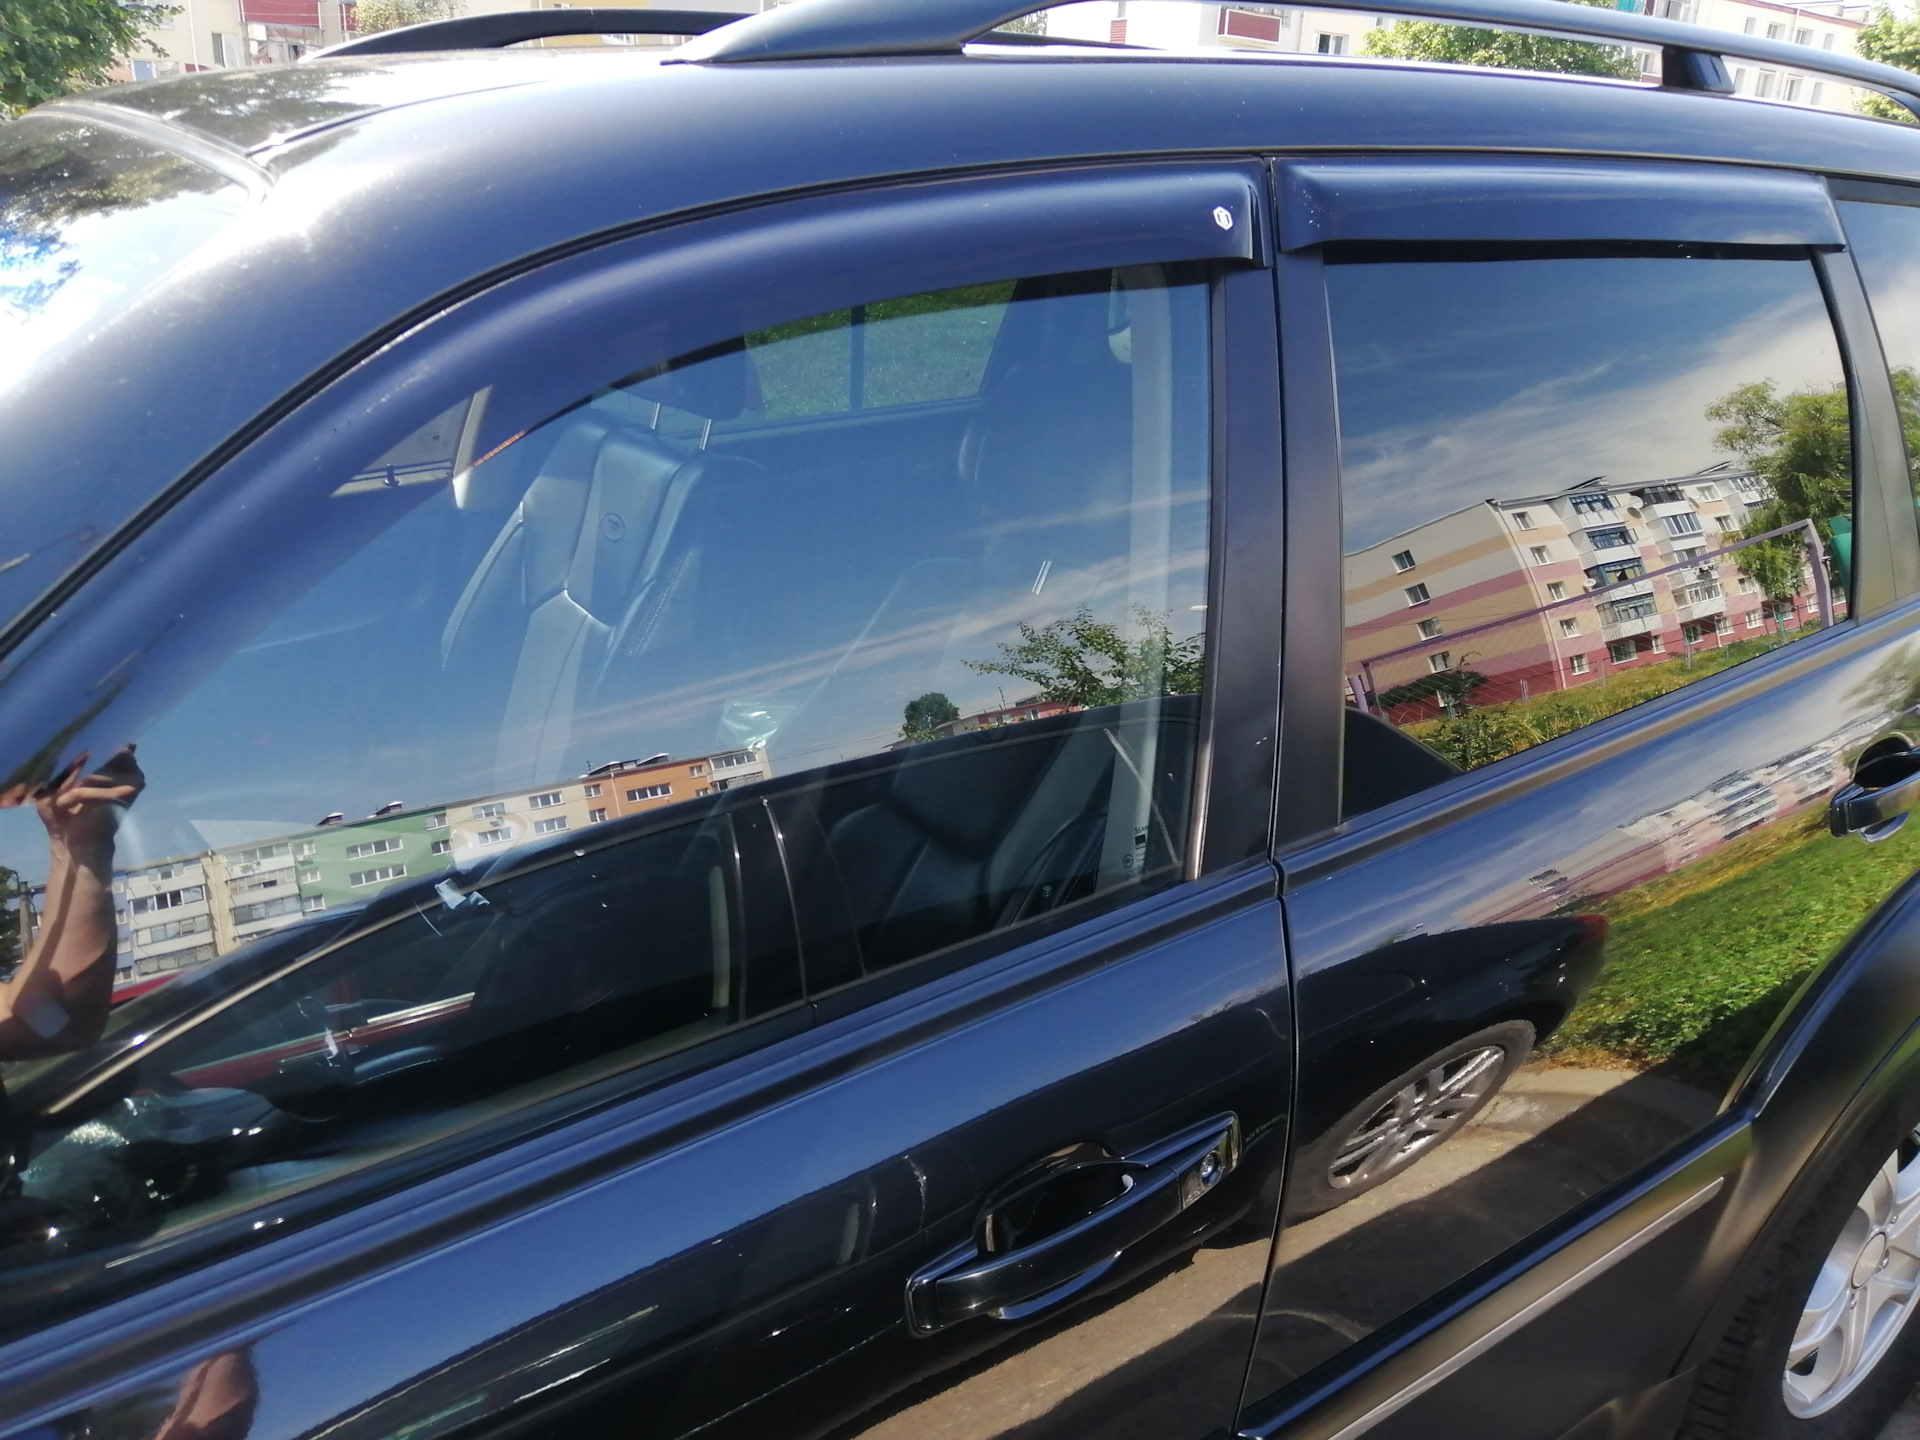 Ветровики на окна автомобиля штраф. Дефлекторы на окна Санг енг Рекстон. Дефлекторы окон на SSANGYONG Rexton g4. Ветровики на Санг енг 2006-. Дефлектор на окна Санг Йонг Рекстон.